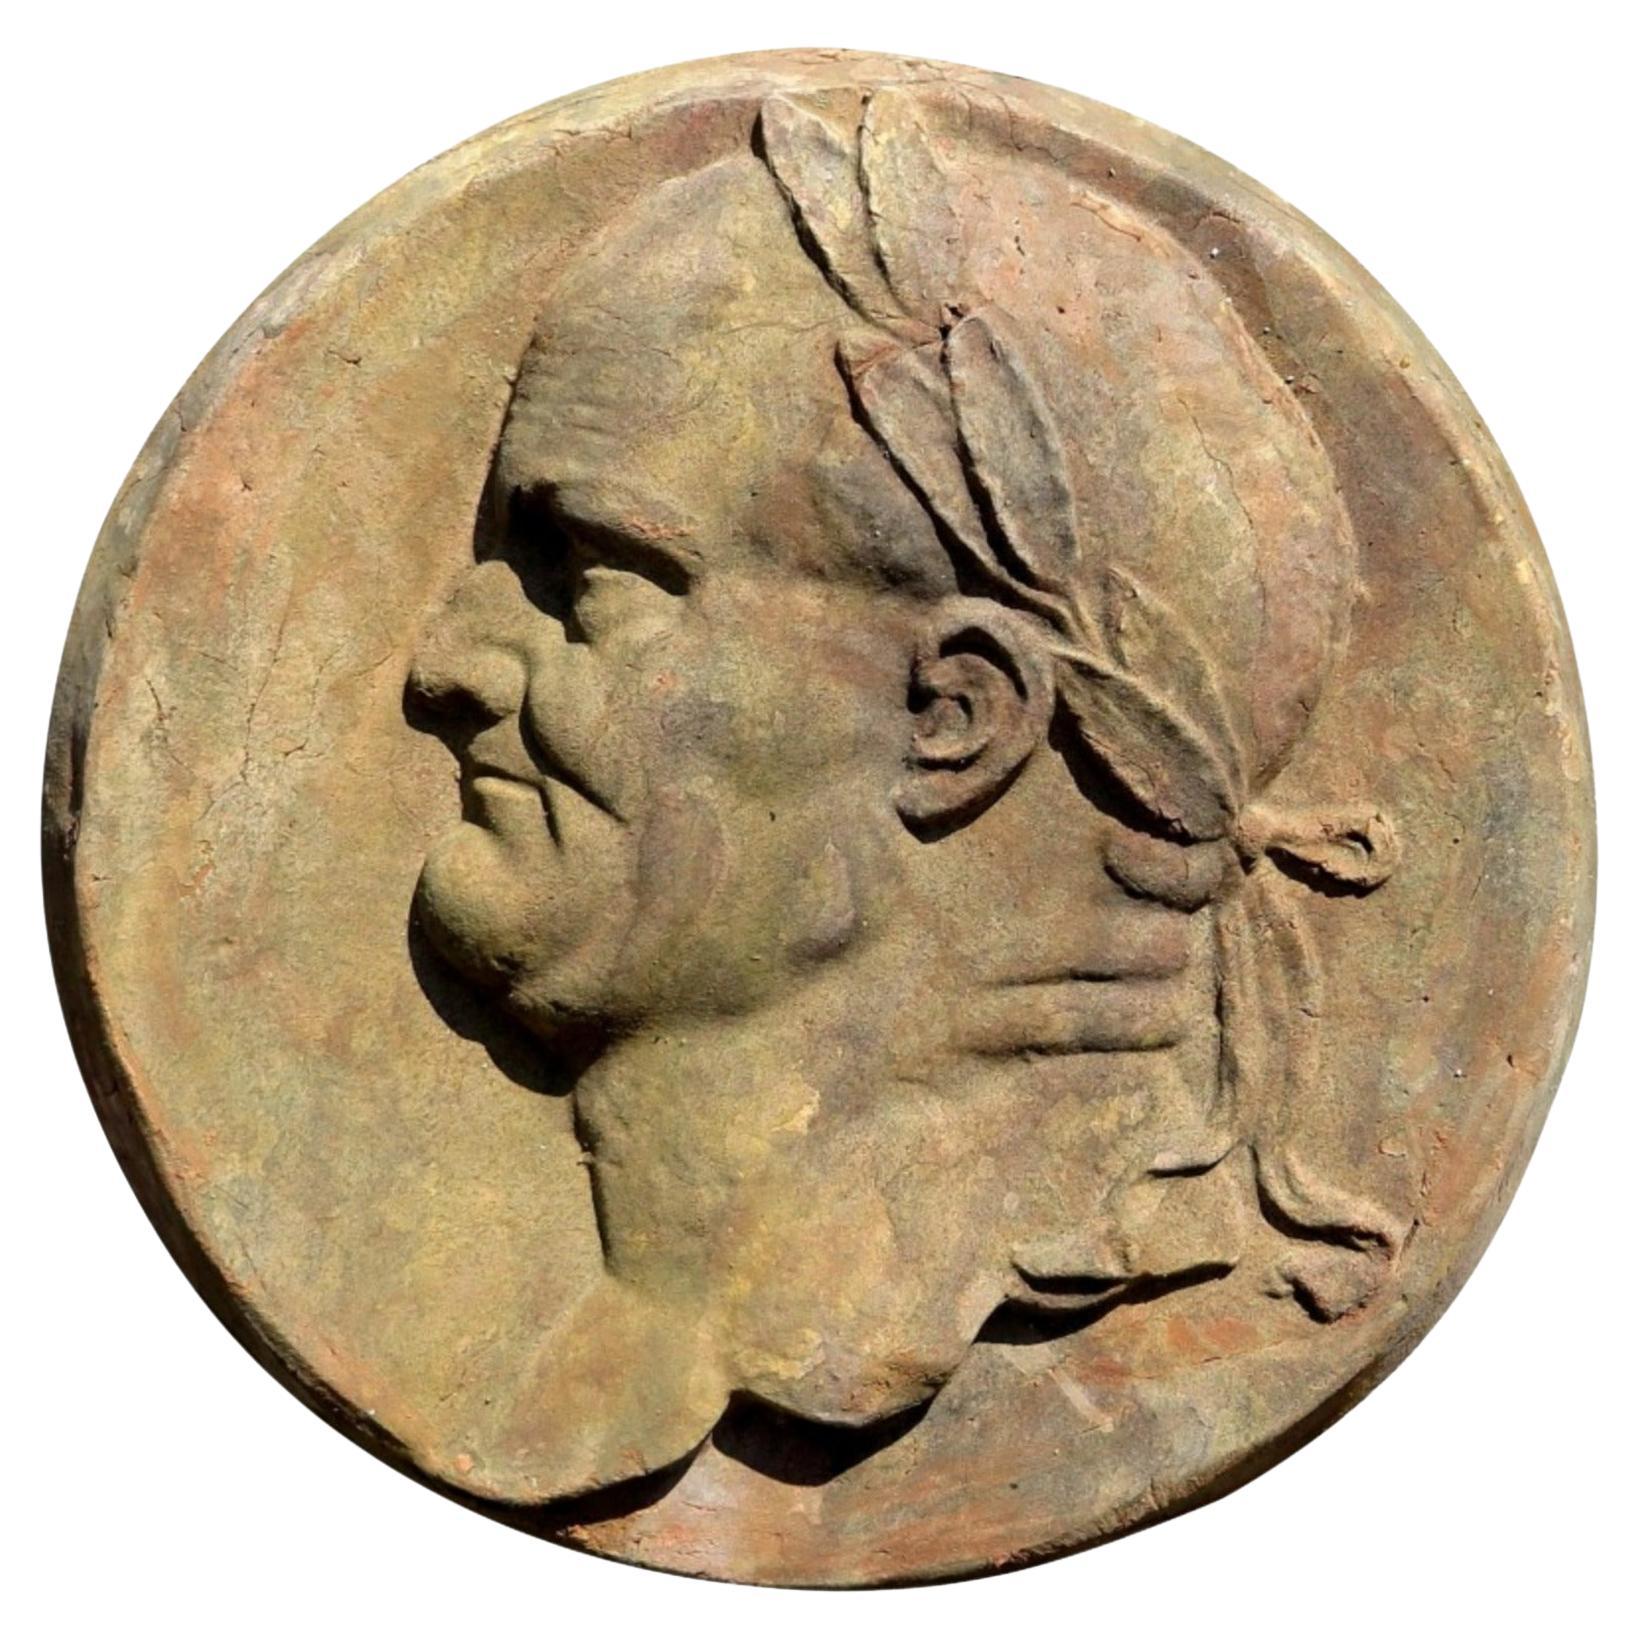 TITUS EMPEREUR ROMAIN, TERRACOTTA ROND fin 19ème siècle